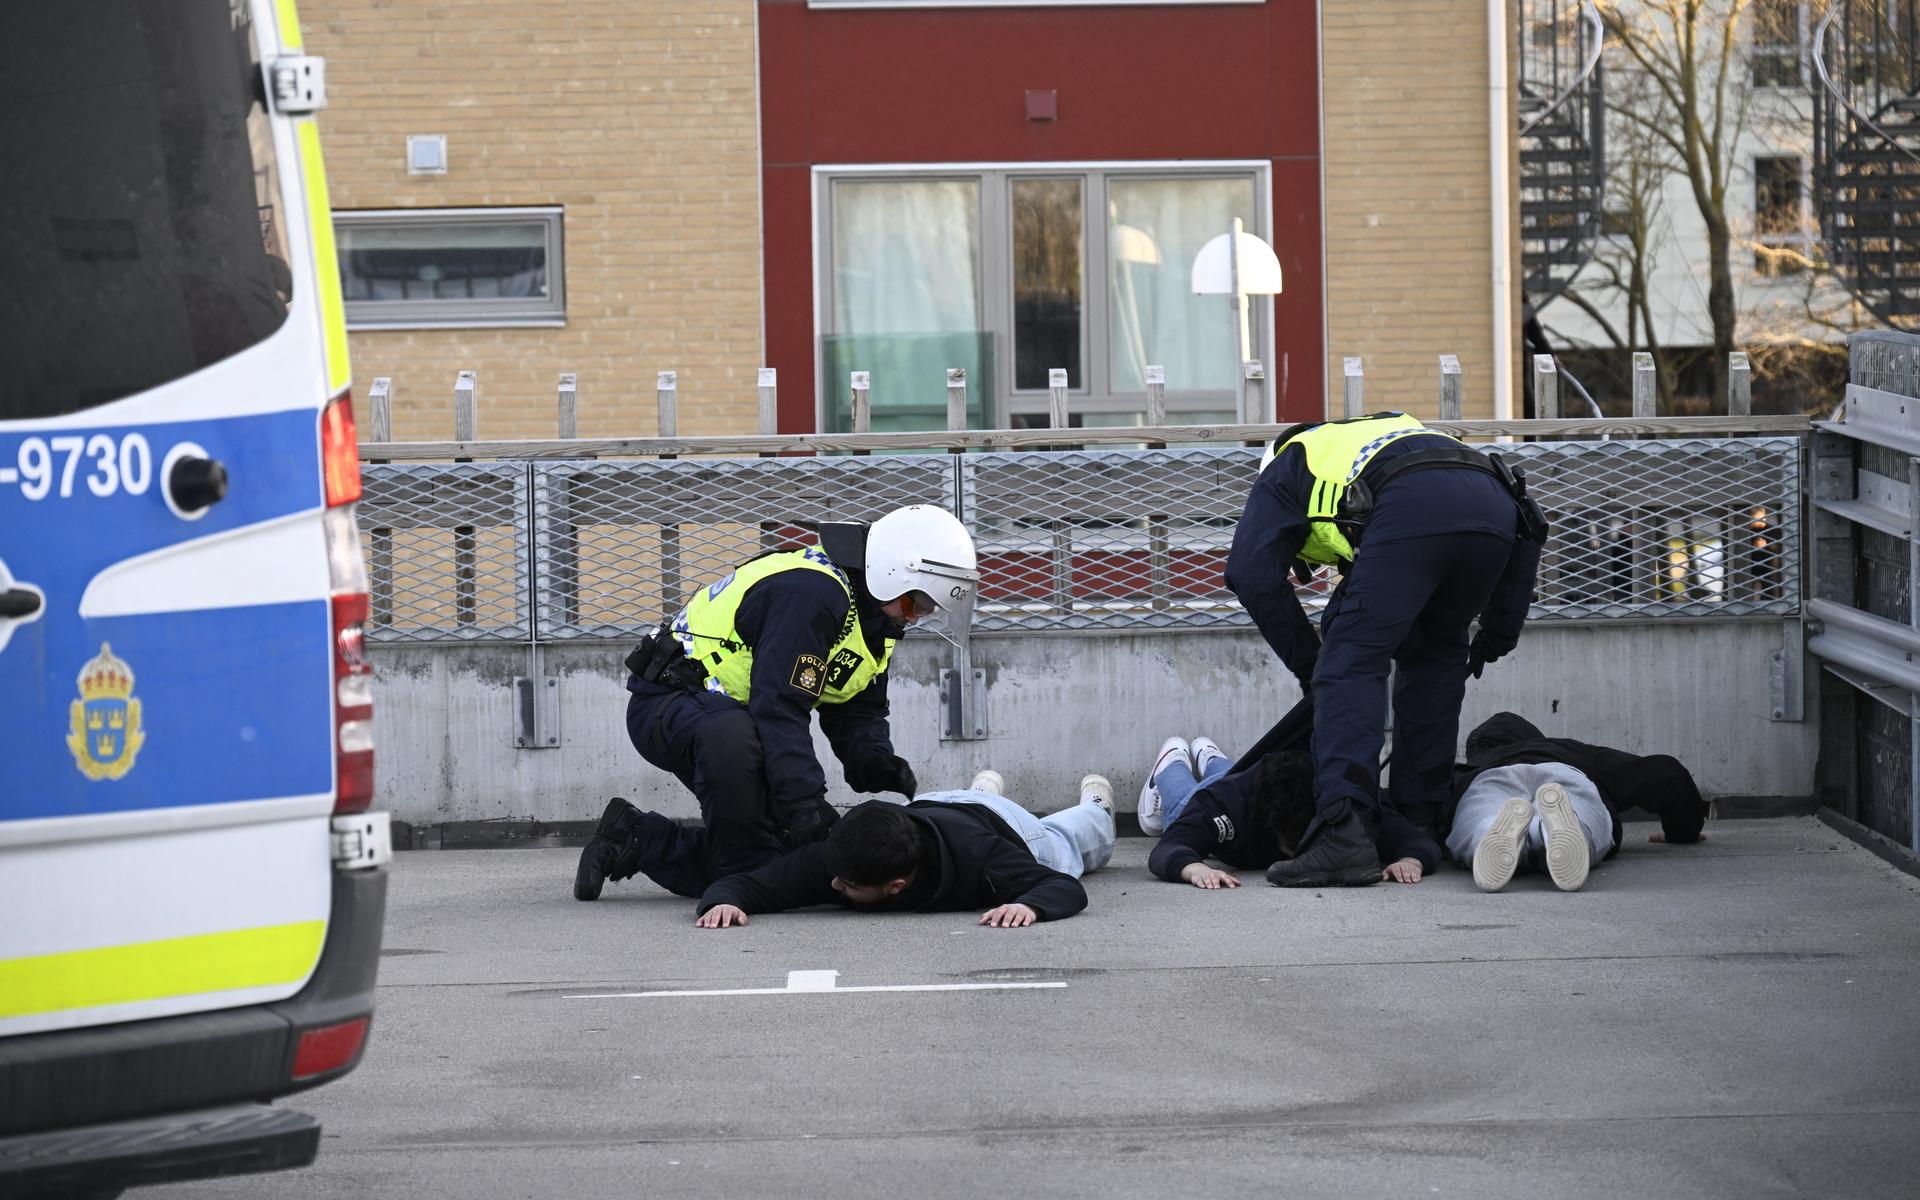 Polisen griper motdemonstranter vid Skånegården i Malmö där Rasmus Paludan, partiledare för det danska högerextrema partiet Stram kurs, höll en manifestation. Paludan hade fått tillstånd för en sammankomst i Landskrona, men polisen flyttade under lördagen sammankomsten.